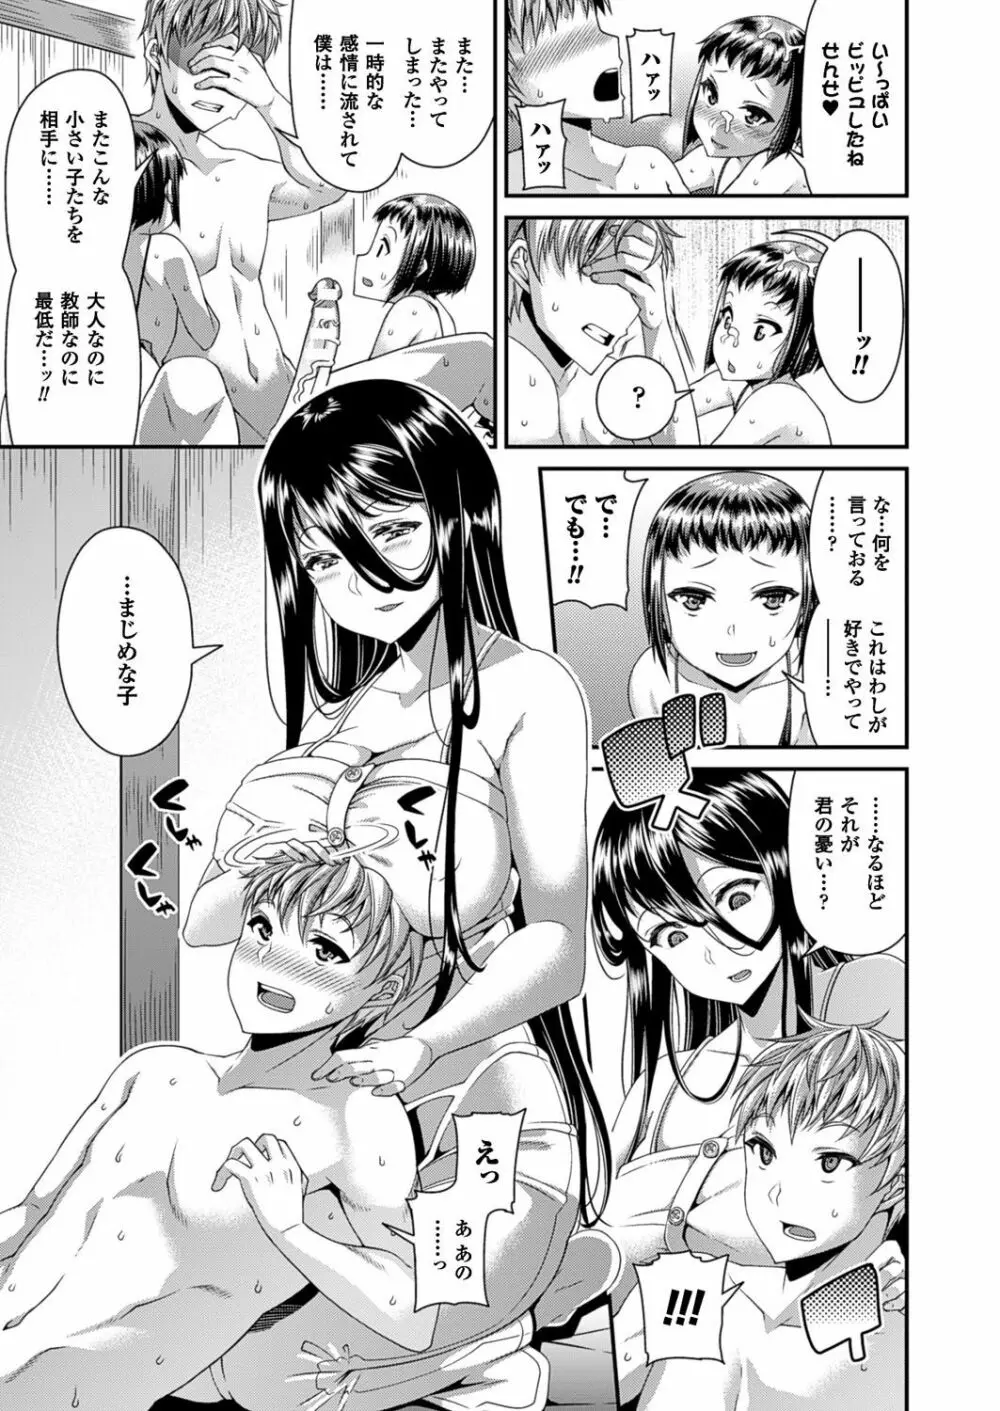 Toshi Densetsu Series Ch. 01-03 56ページ